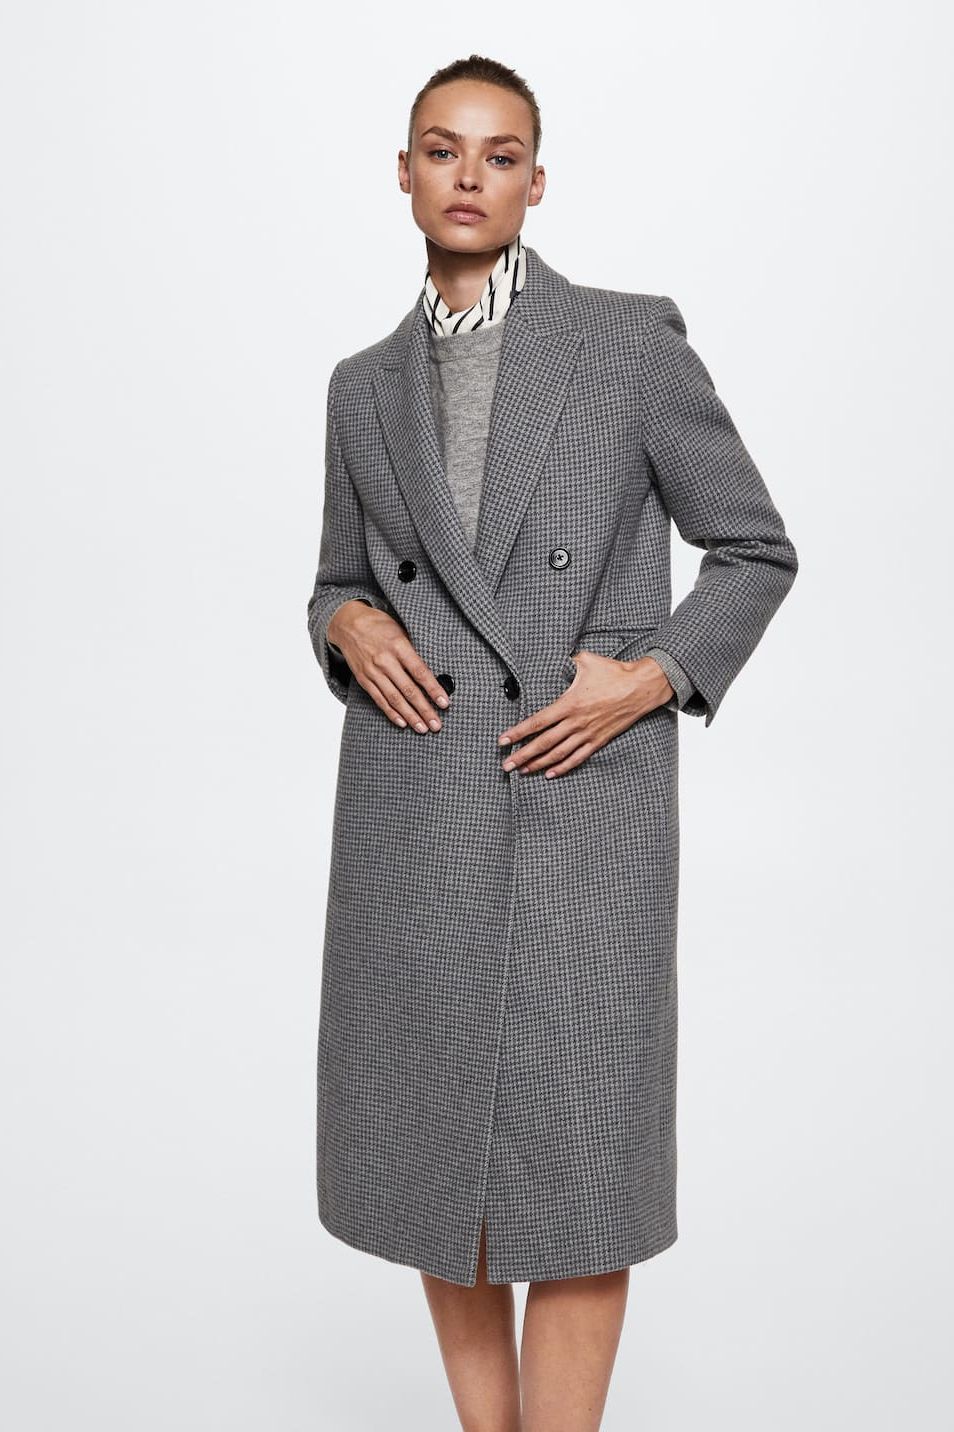 Helen Mirren wears Houndstooth coat